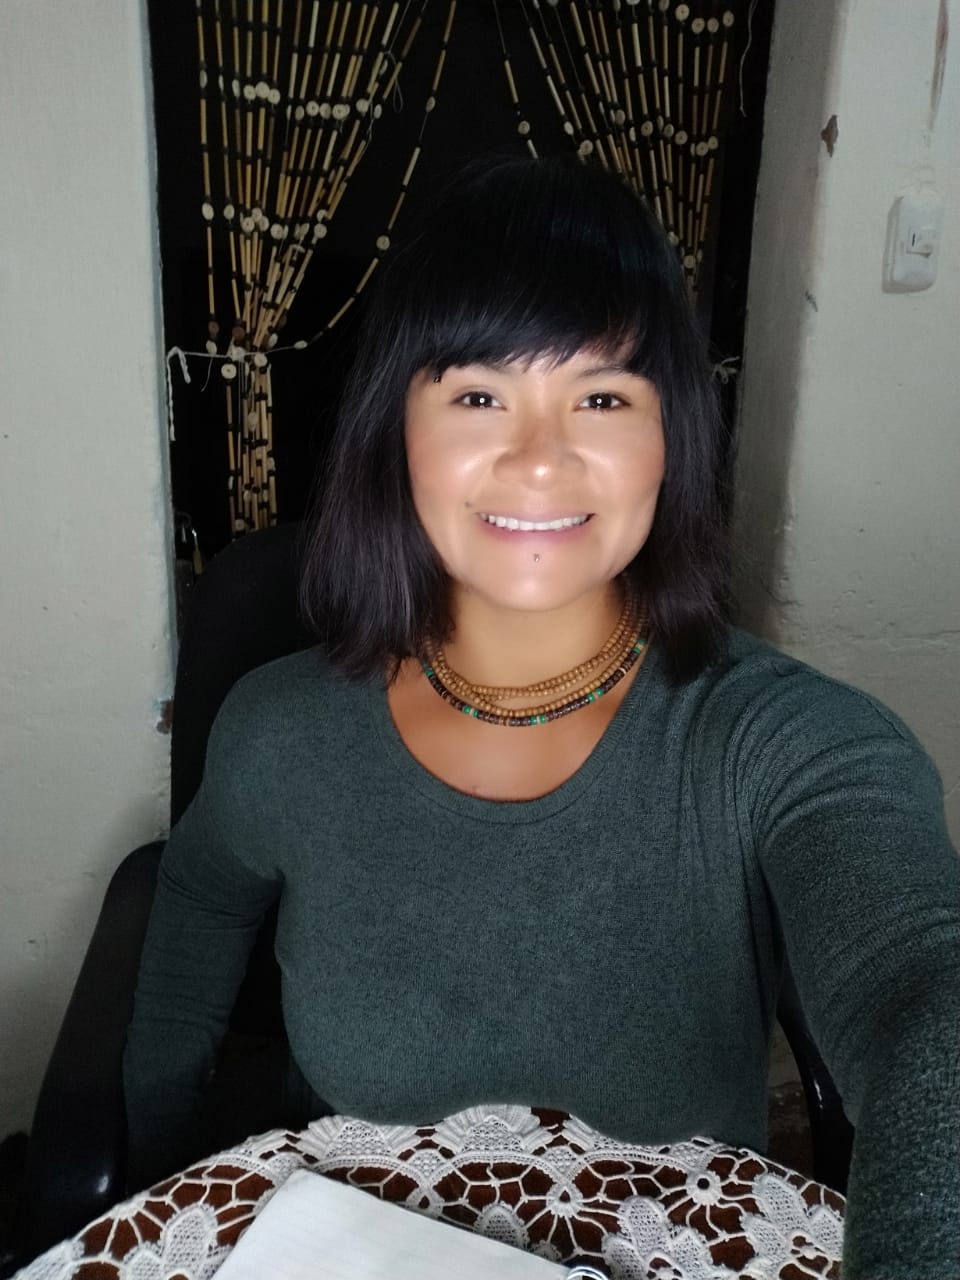 Isapi Rua es comunicadora social, radialista y periodista de investigación en temas de derechos colectivos de pueblos indígenas y medio ambiente del Chaco boliviano. Es autora del documental Kuña Iñee (2019) y Mujeres y extractivismo (2018).